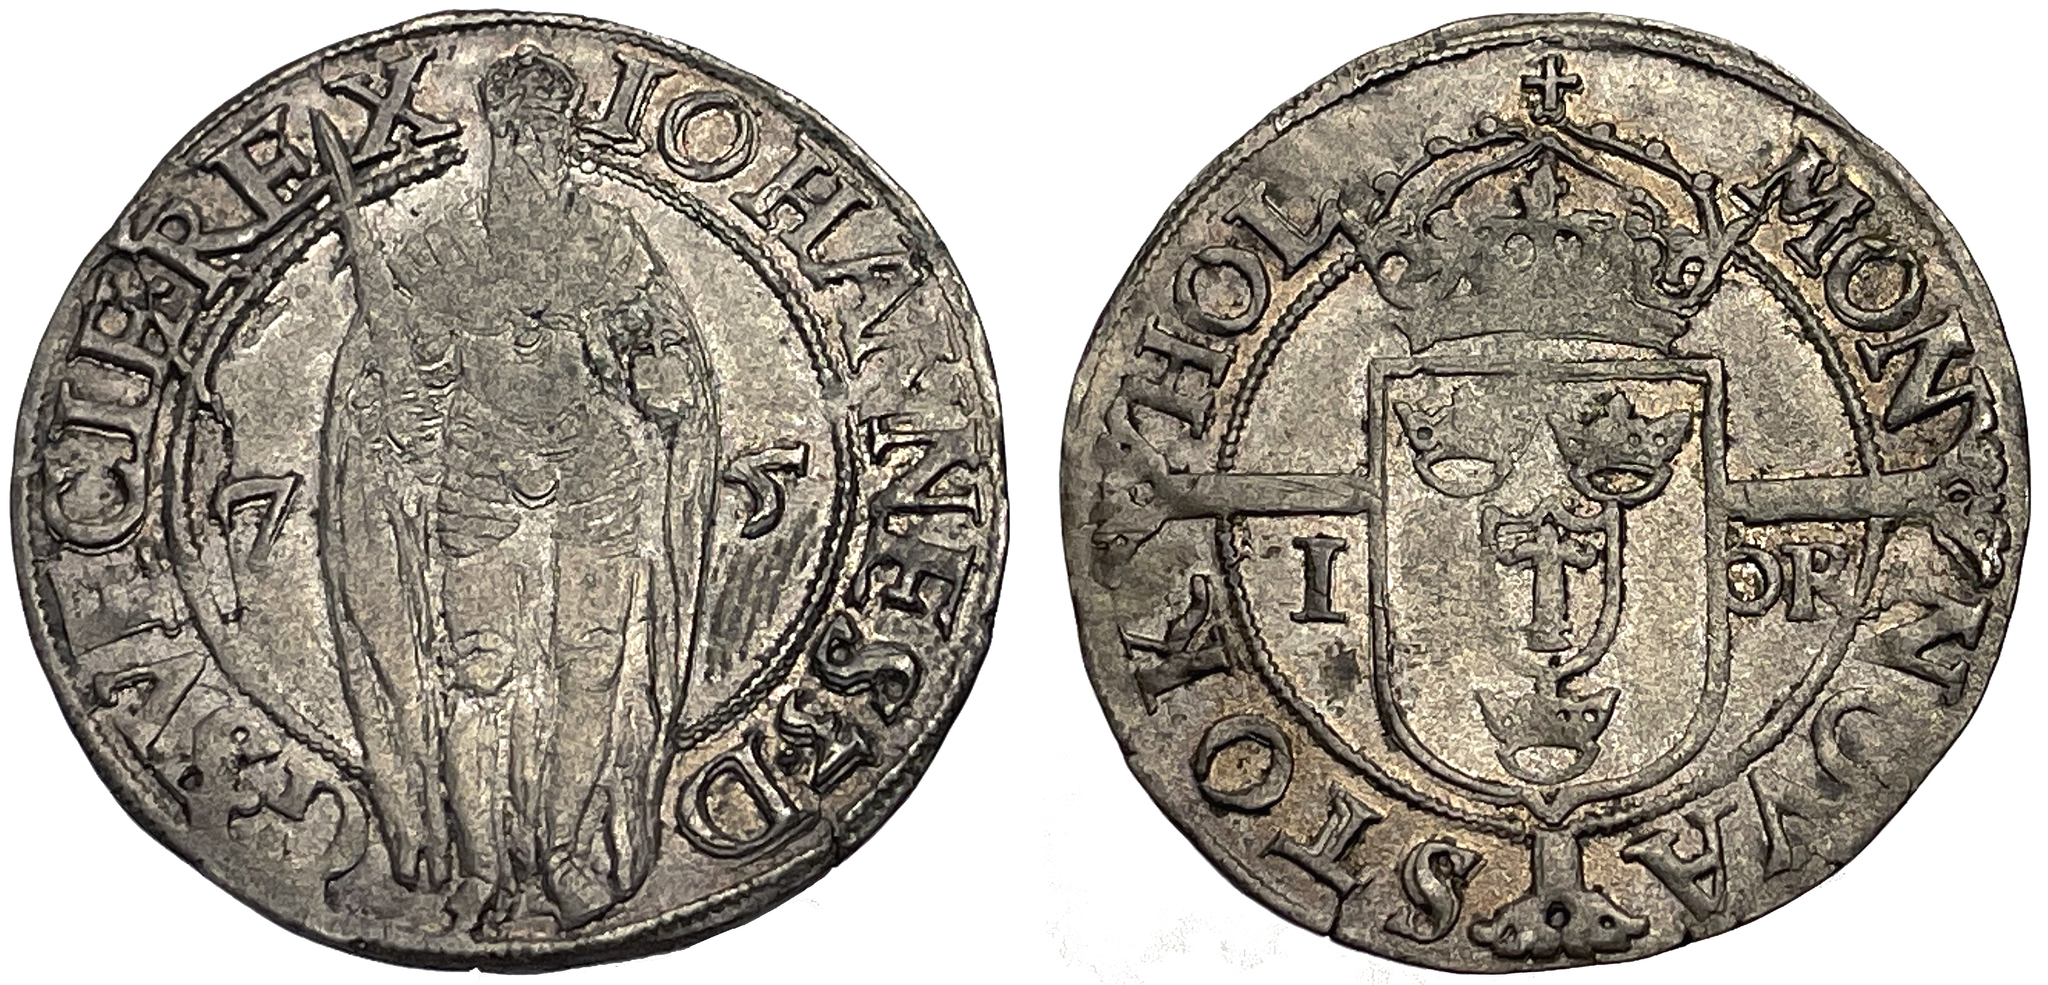 Johan III - 1 Öre 1575 - Vackert exemplar med präglingsglans